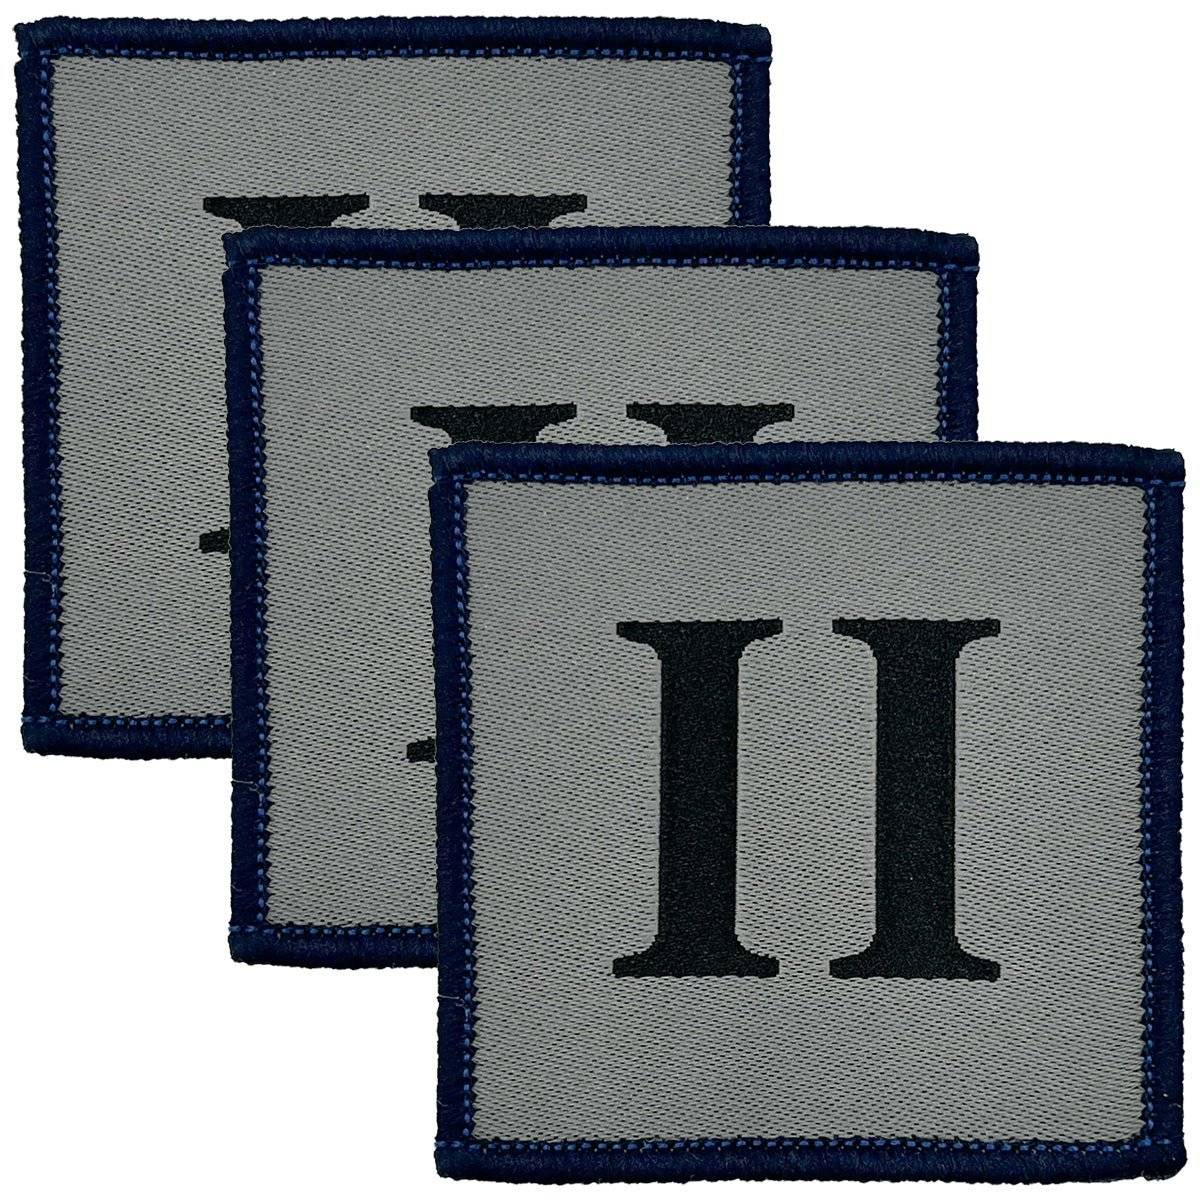 Ranger Regiment II TRF Iron On Badge with Dark Blue Border - John Bull Clothing